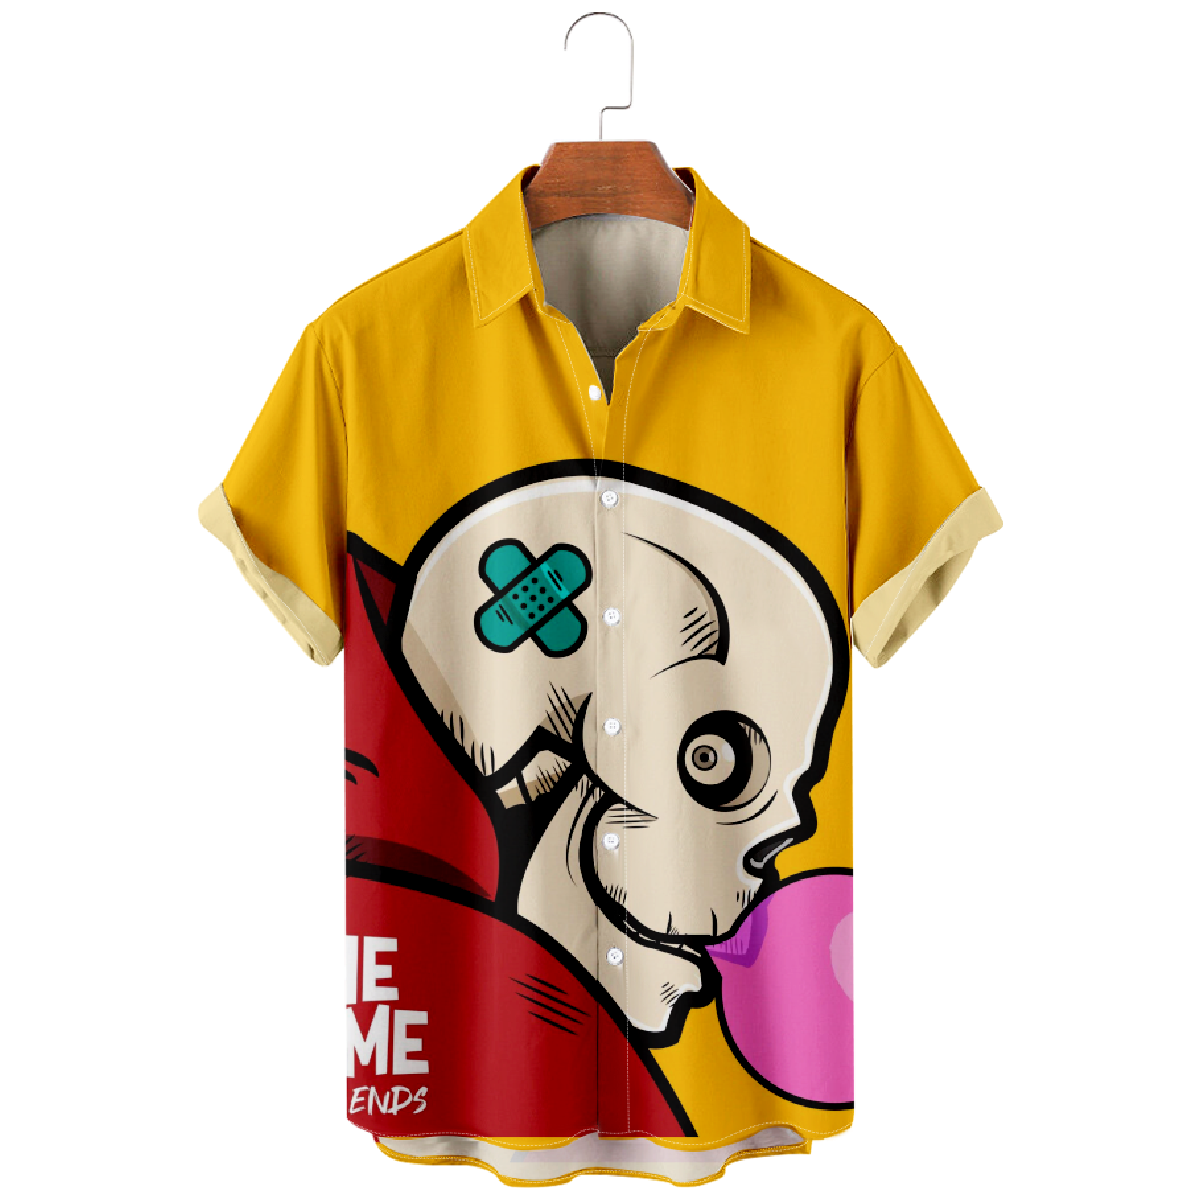 Skull Bubble Gum Button-Up Short Sleeve Shirt Men's Casual Summer Shirt